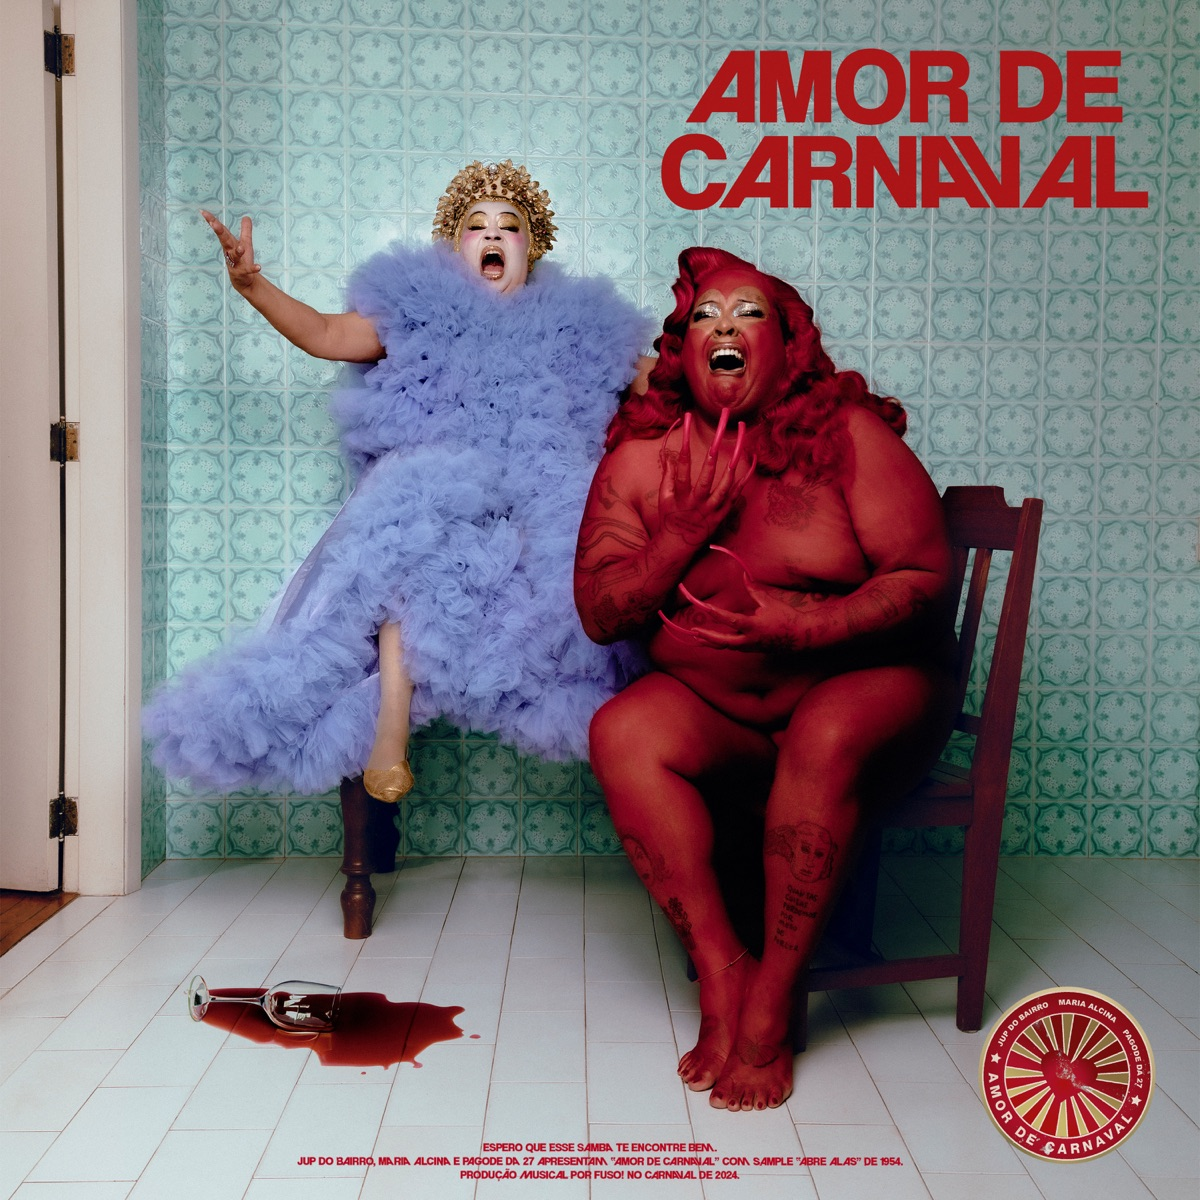 Jup do Bairro, Maria Alcina, & Pagode da 27 Amor de Carnaval cover artwork